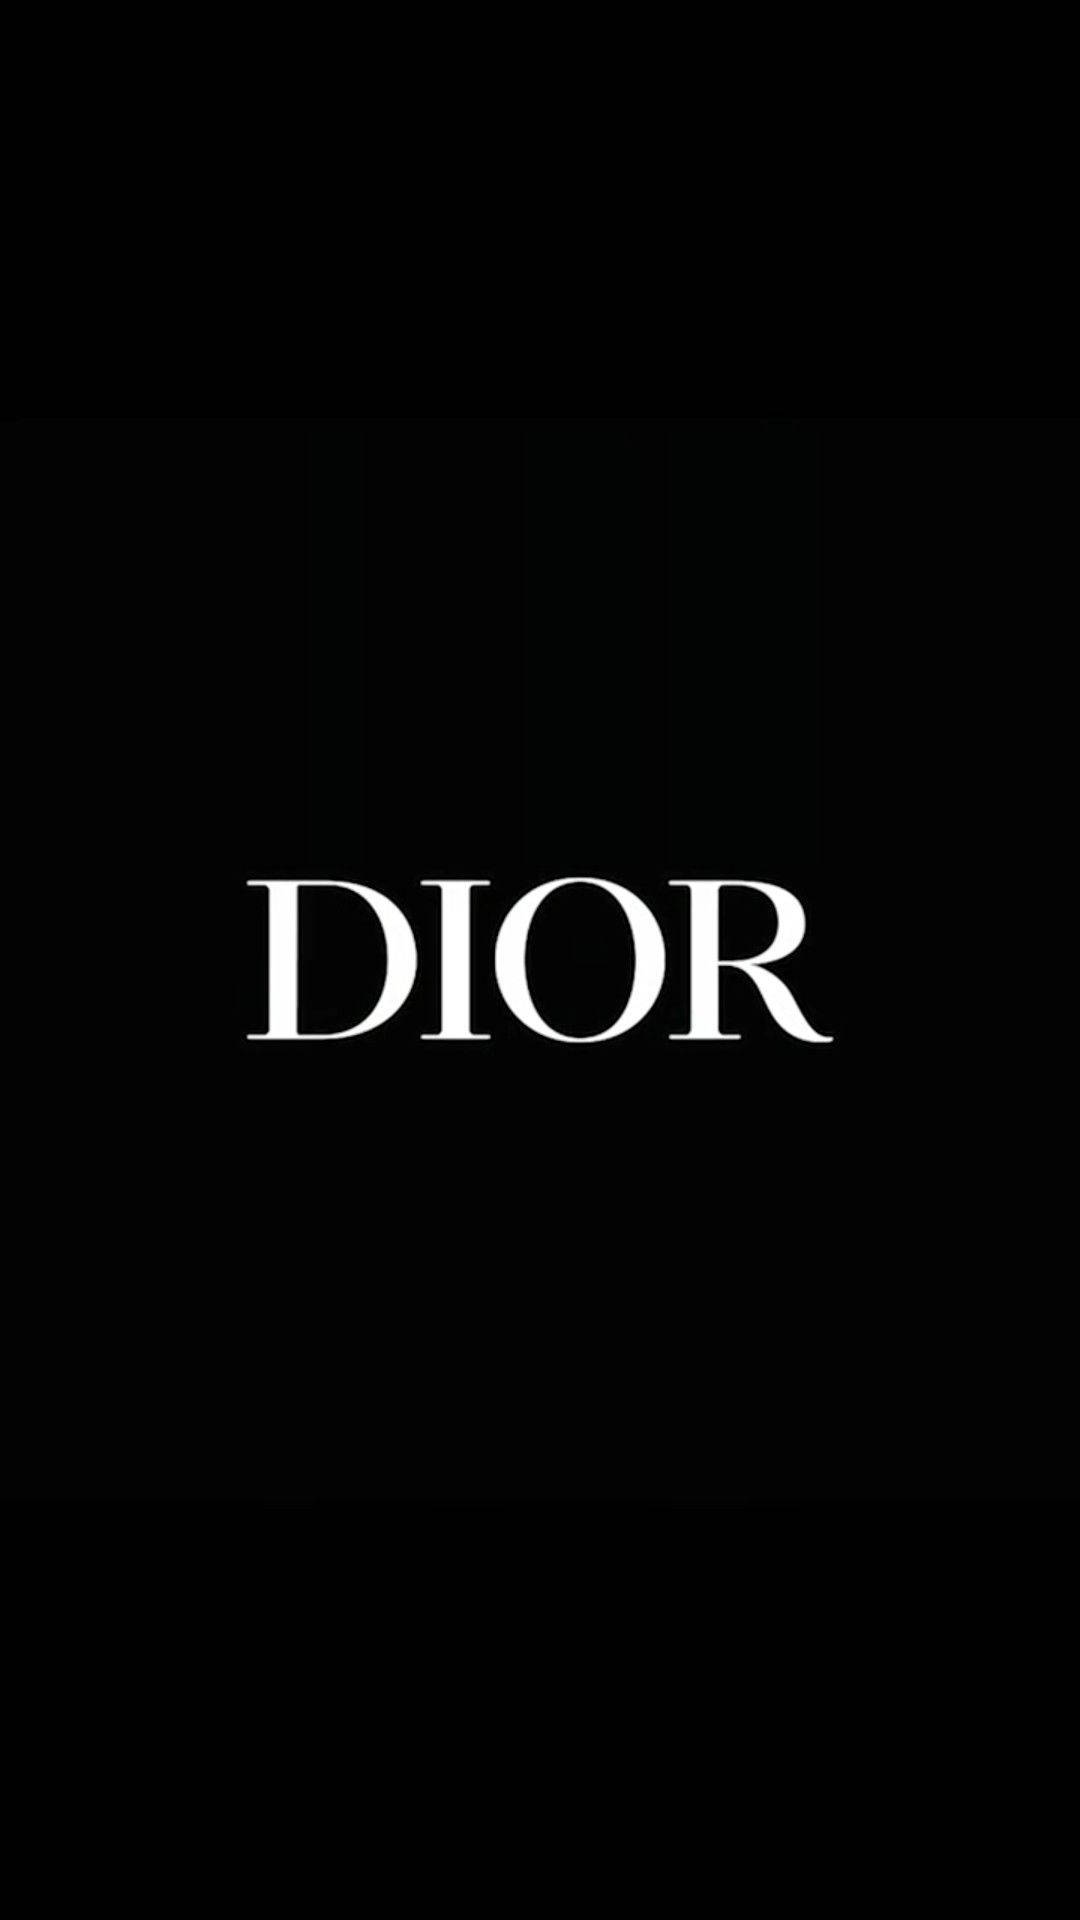 Simple Dior Phone Wallpaper